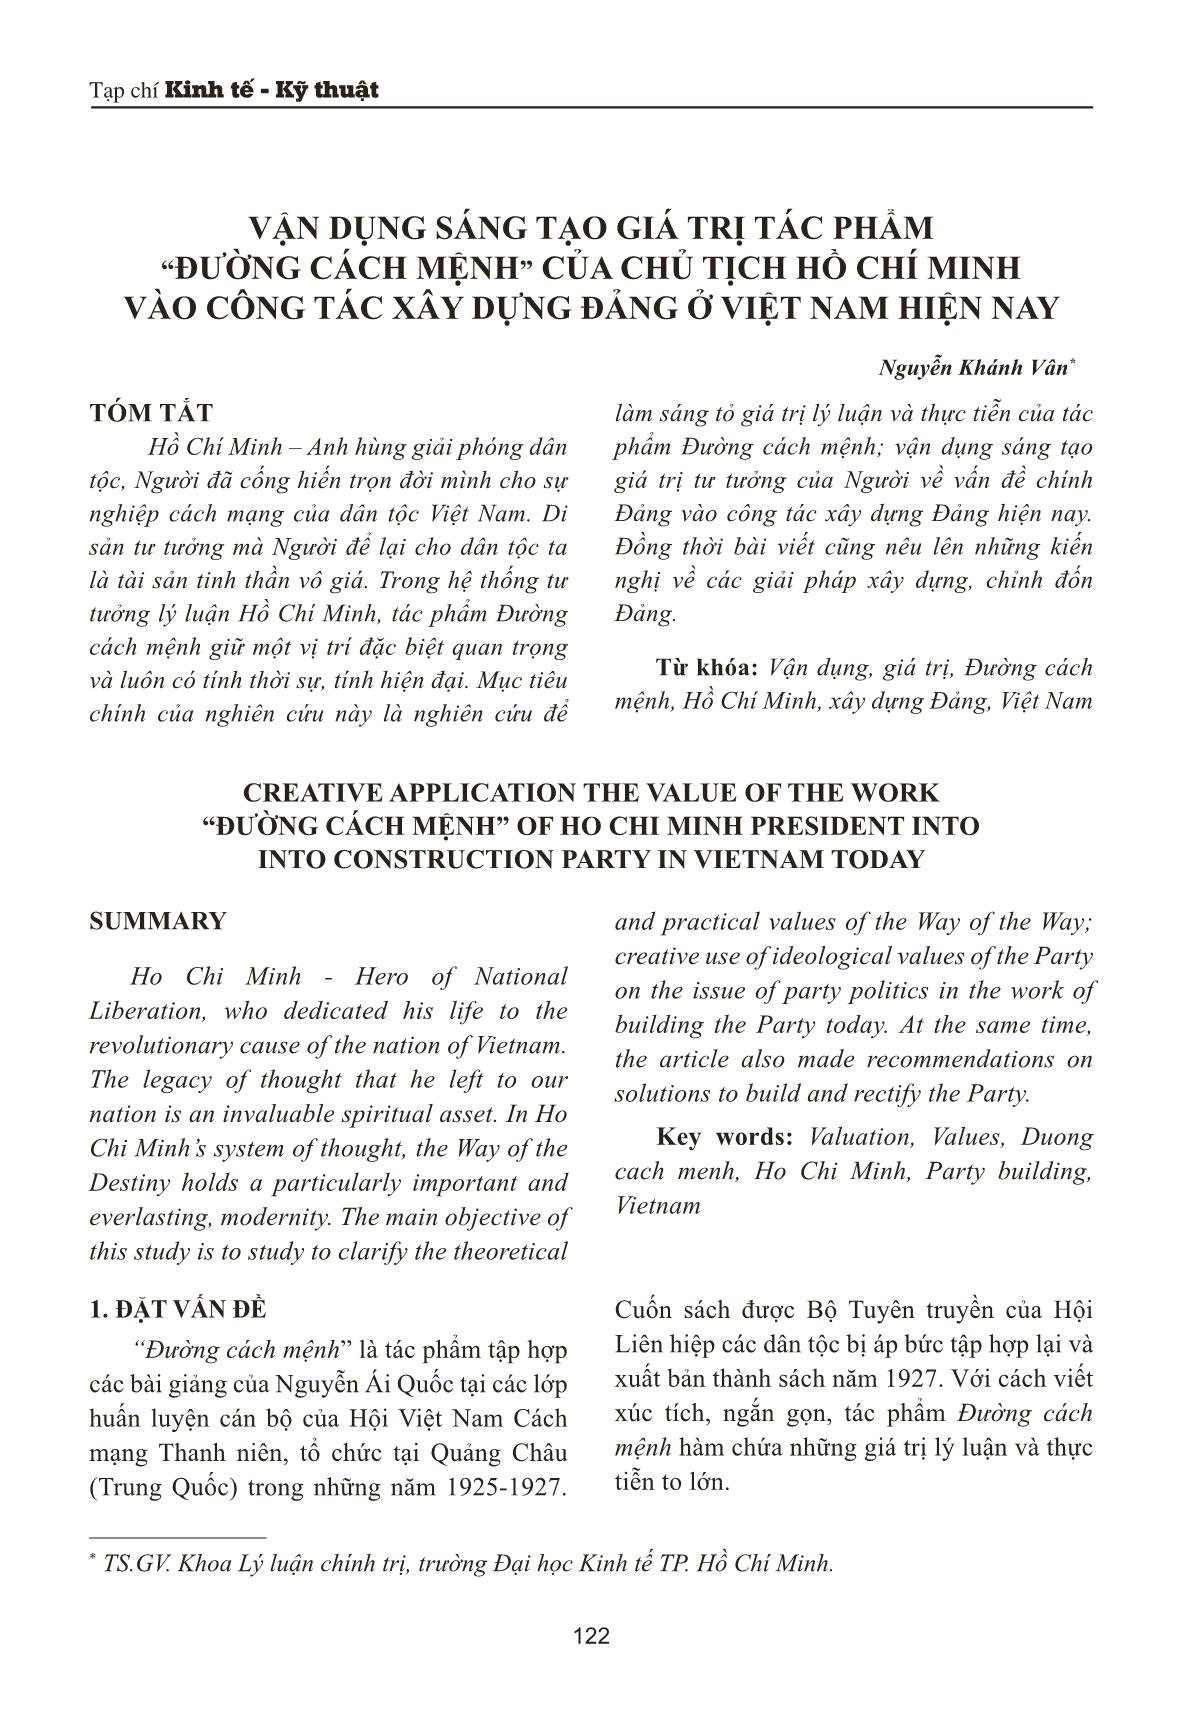 Vận dụng sáng tạo giá trị tác phẩm “Đường cách mệnh” của chủ tịch Hồ Chí Minh vào công tác xây dựng đảng ở Việt Nam hiện nay trang 1